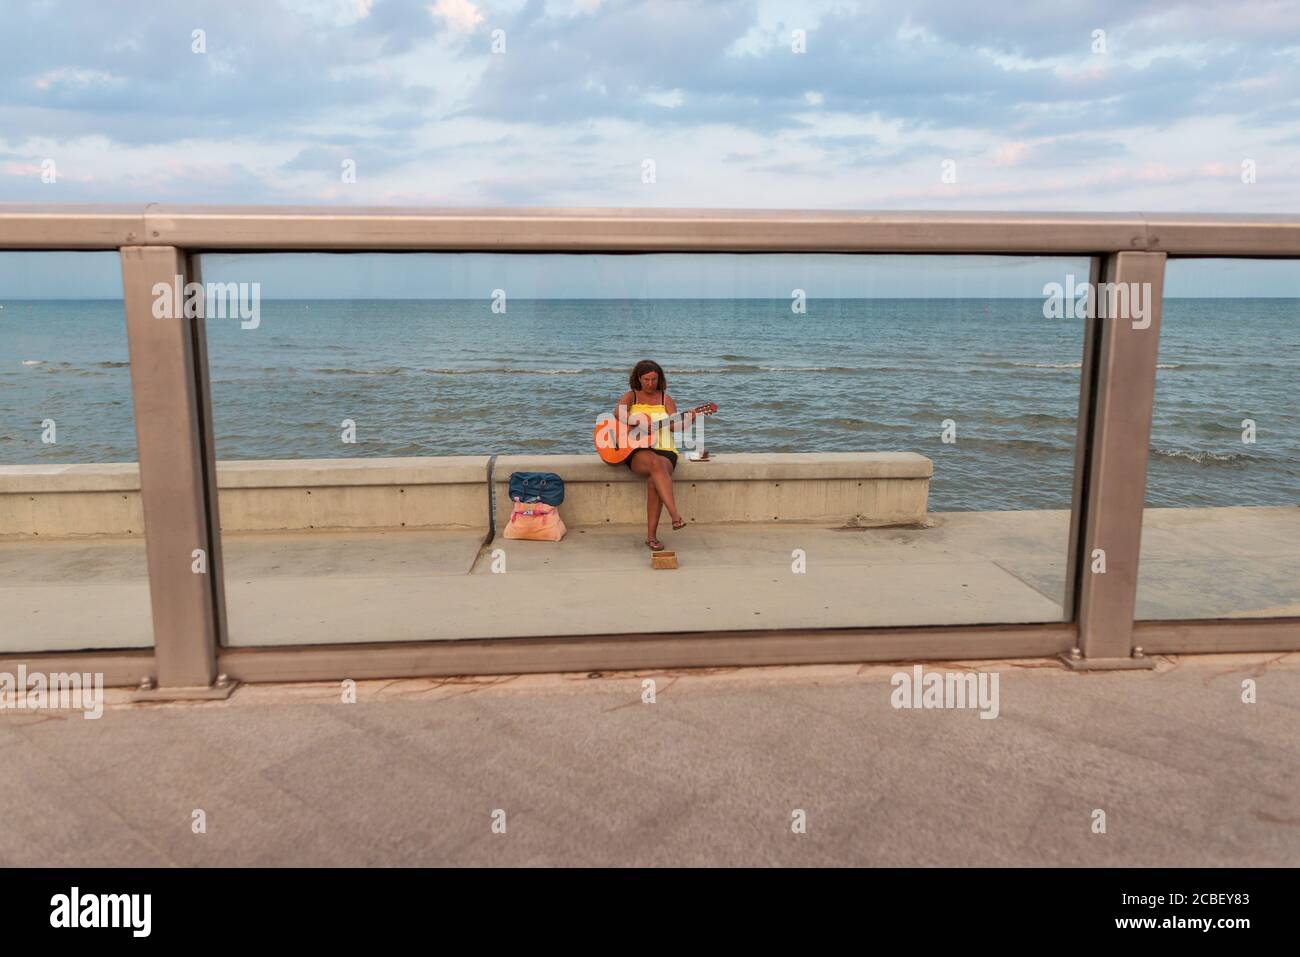 Larnaca / Chypre - 15 août 2019: Femme jouant de la guitare pour les alms assis sur le mur de la promenade avec la mer en arrière-plan Banque D'Images